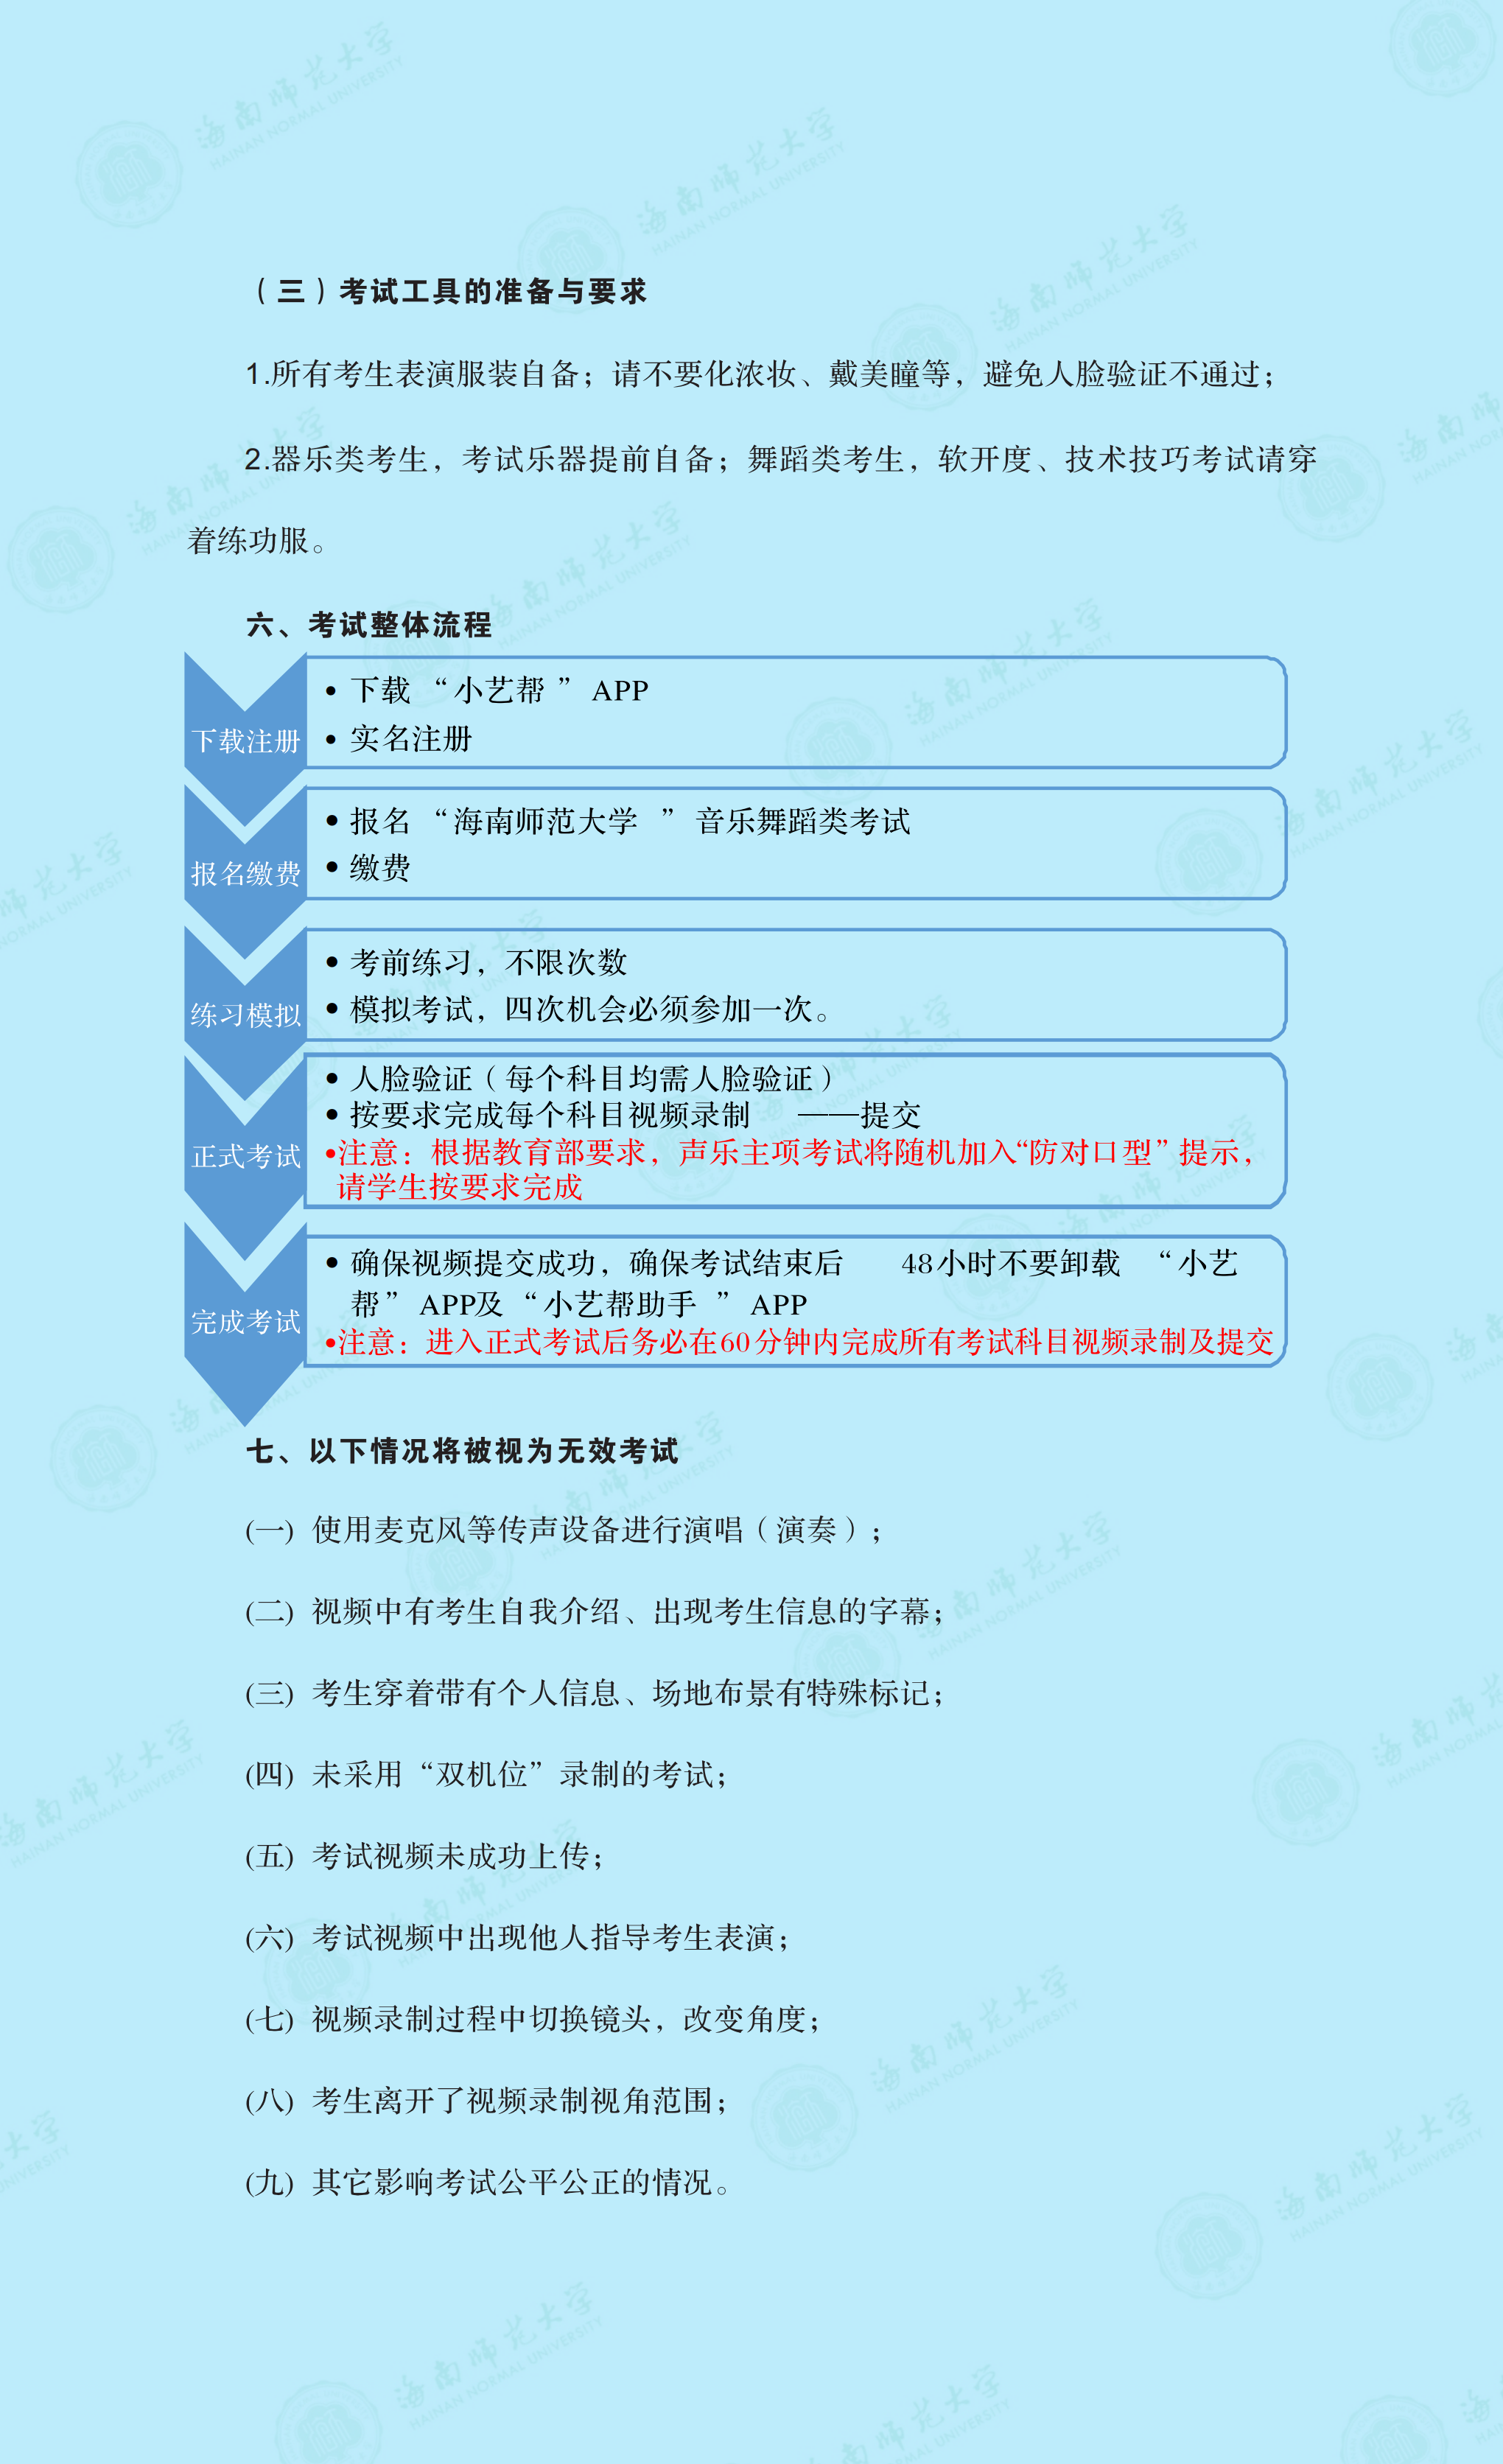 永利娱高ylg060net2021年音乐舞蹈类专业线上考试公告